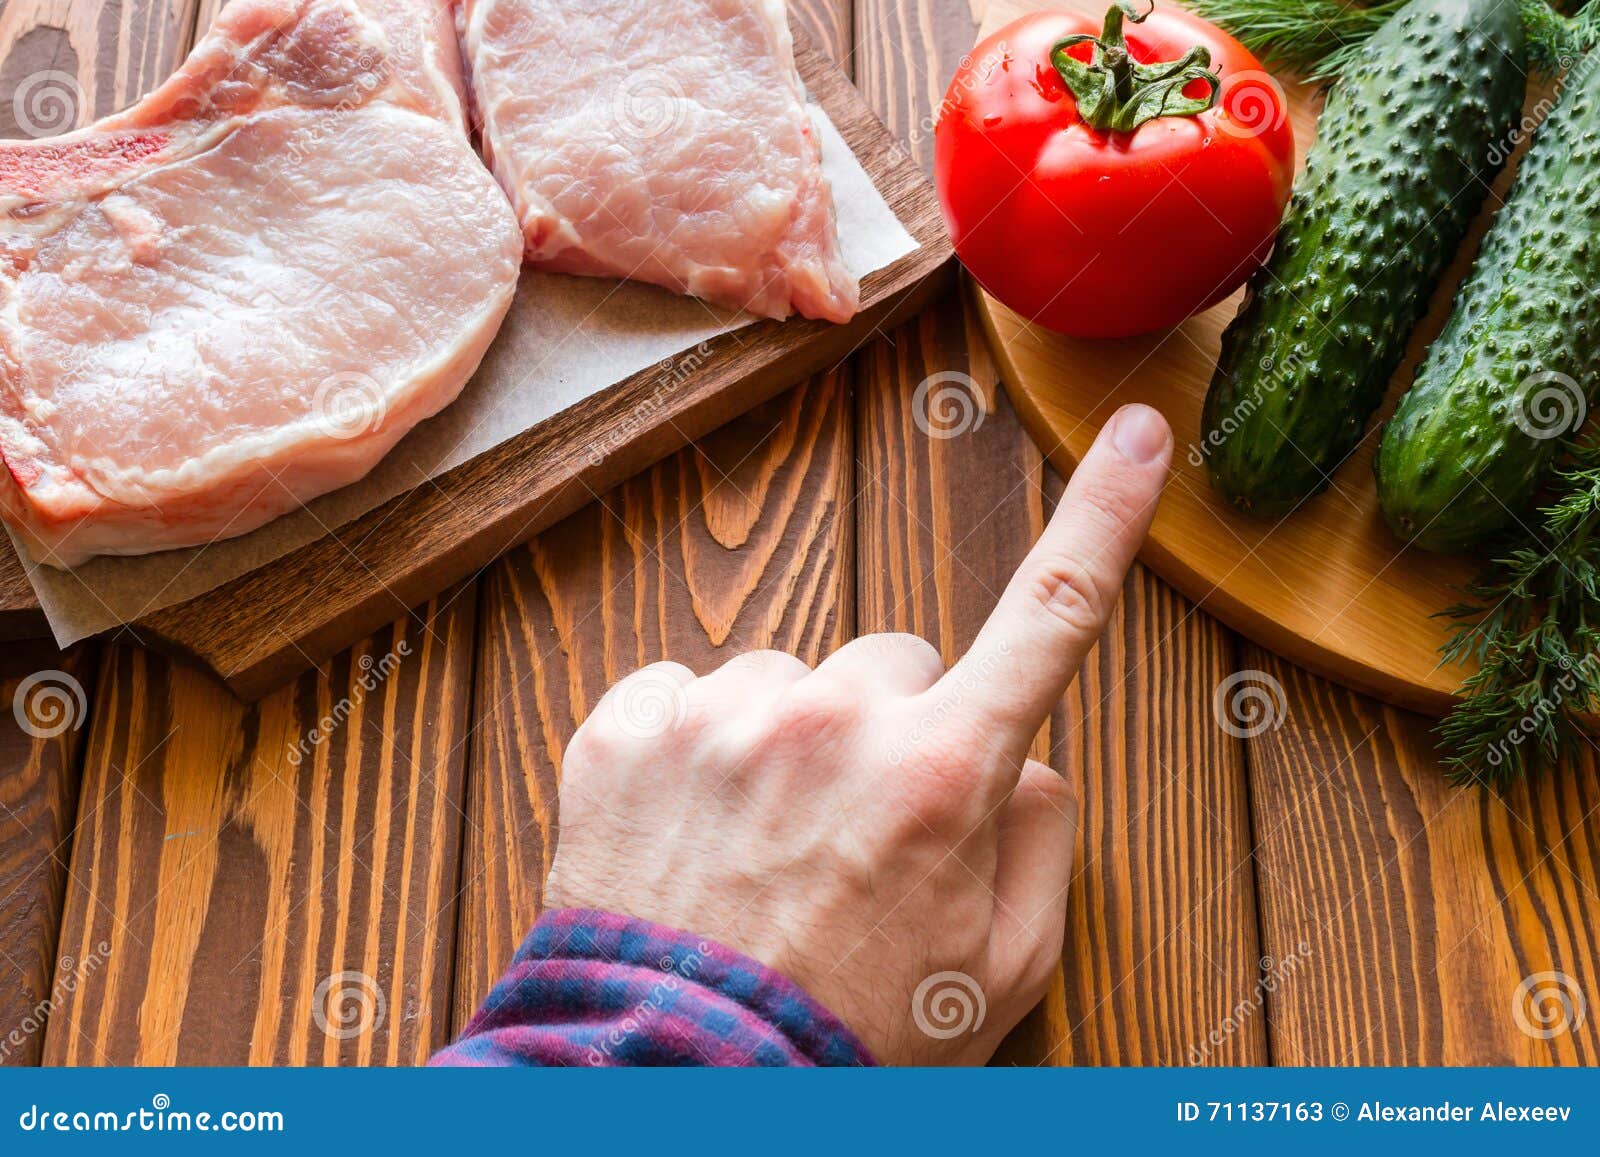 Что есть вместо мяса. Отказ от мясной пищи. Мясо. Вместо мяса овощи. Откажись от мяса.